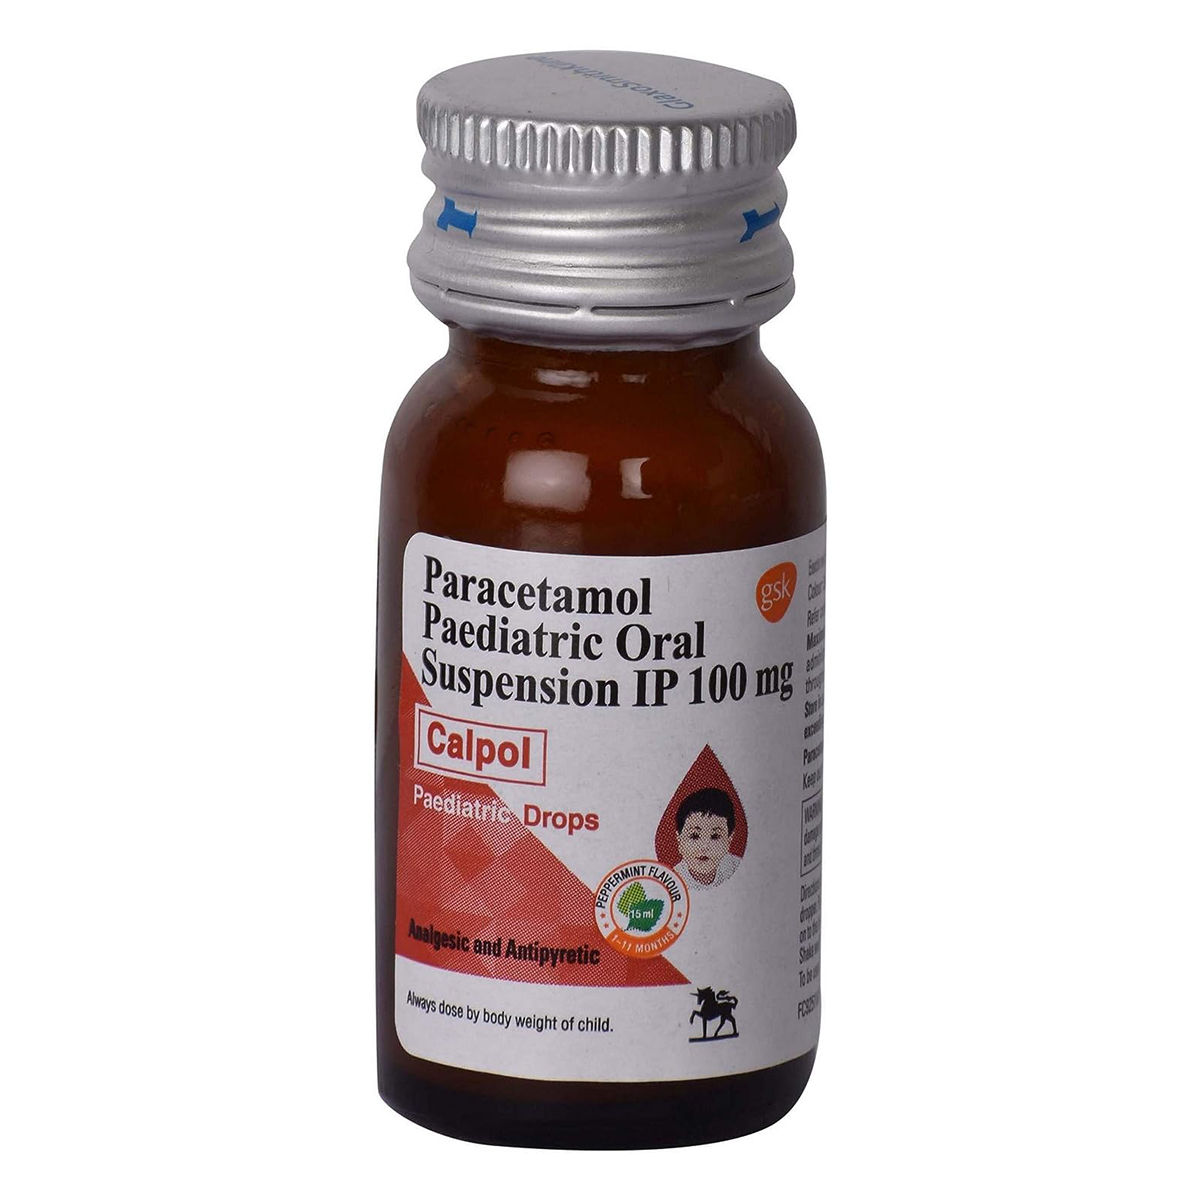 Calpol Pediatric Drops 15 ml, Pack of 1 ORAL DROPS